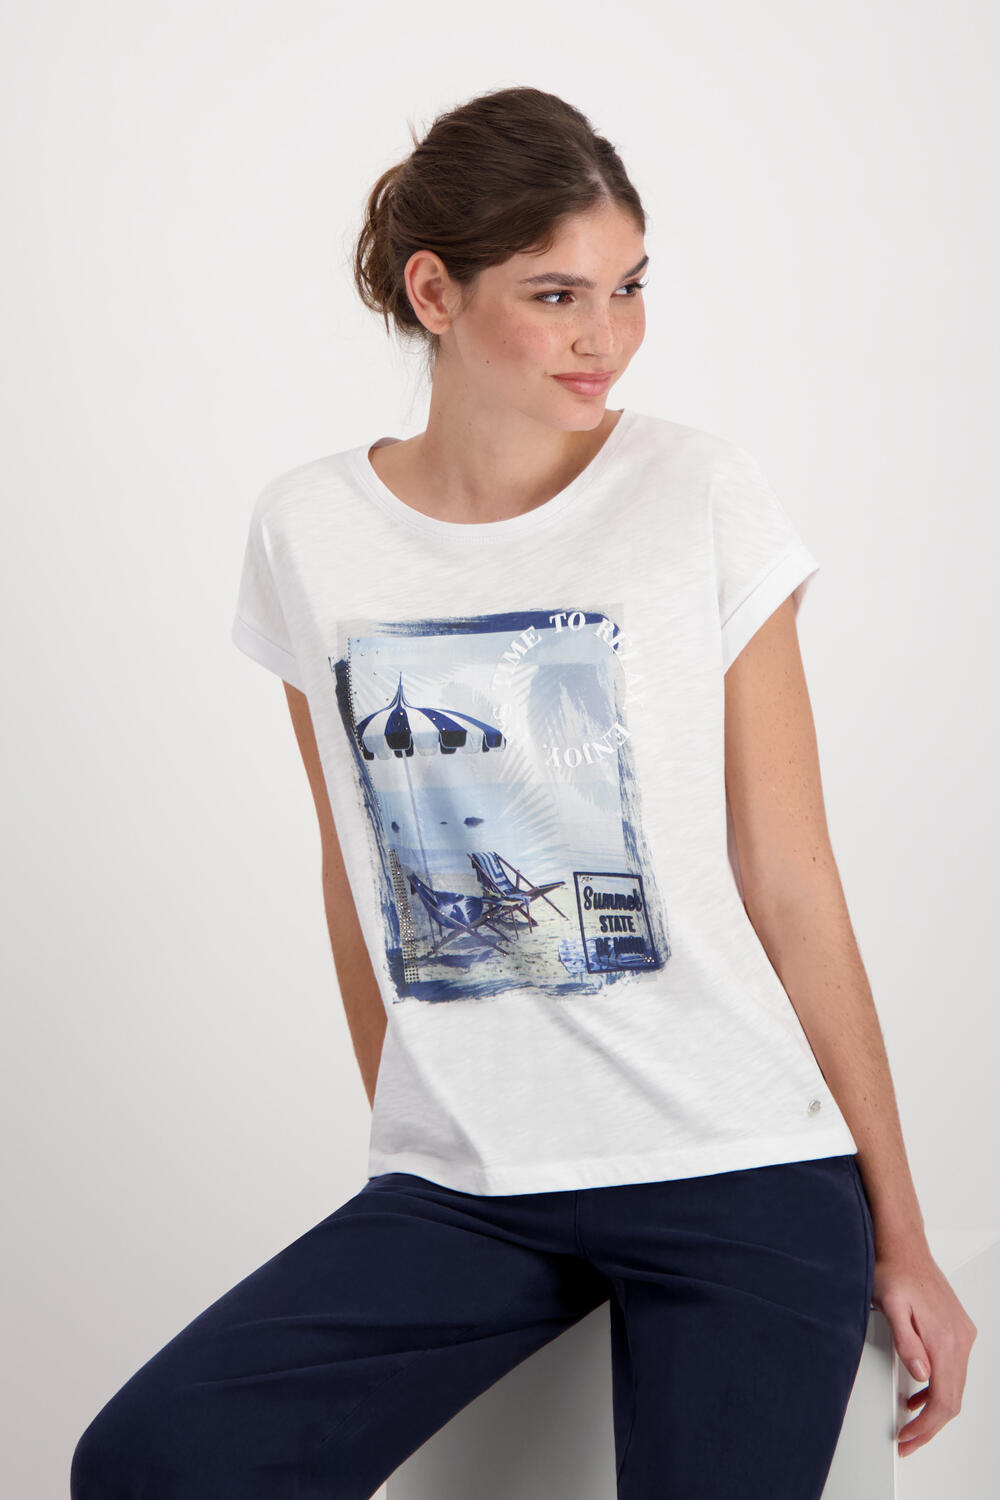 monari Beach 3D | Shirt Print Schrift Deutschland mit